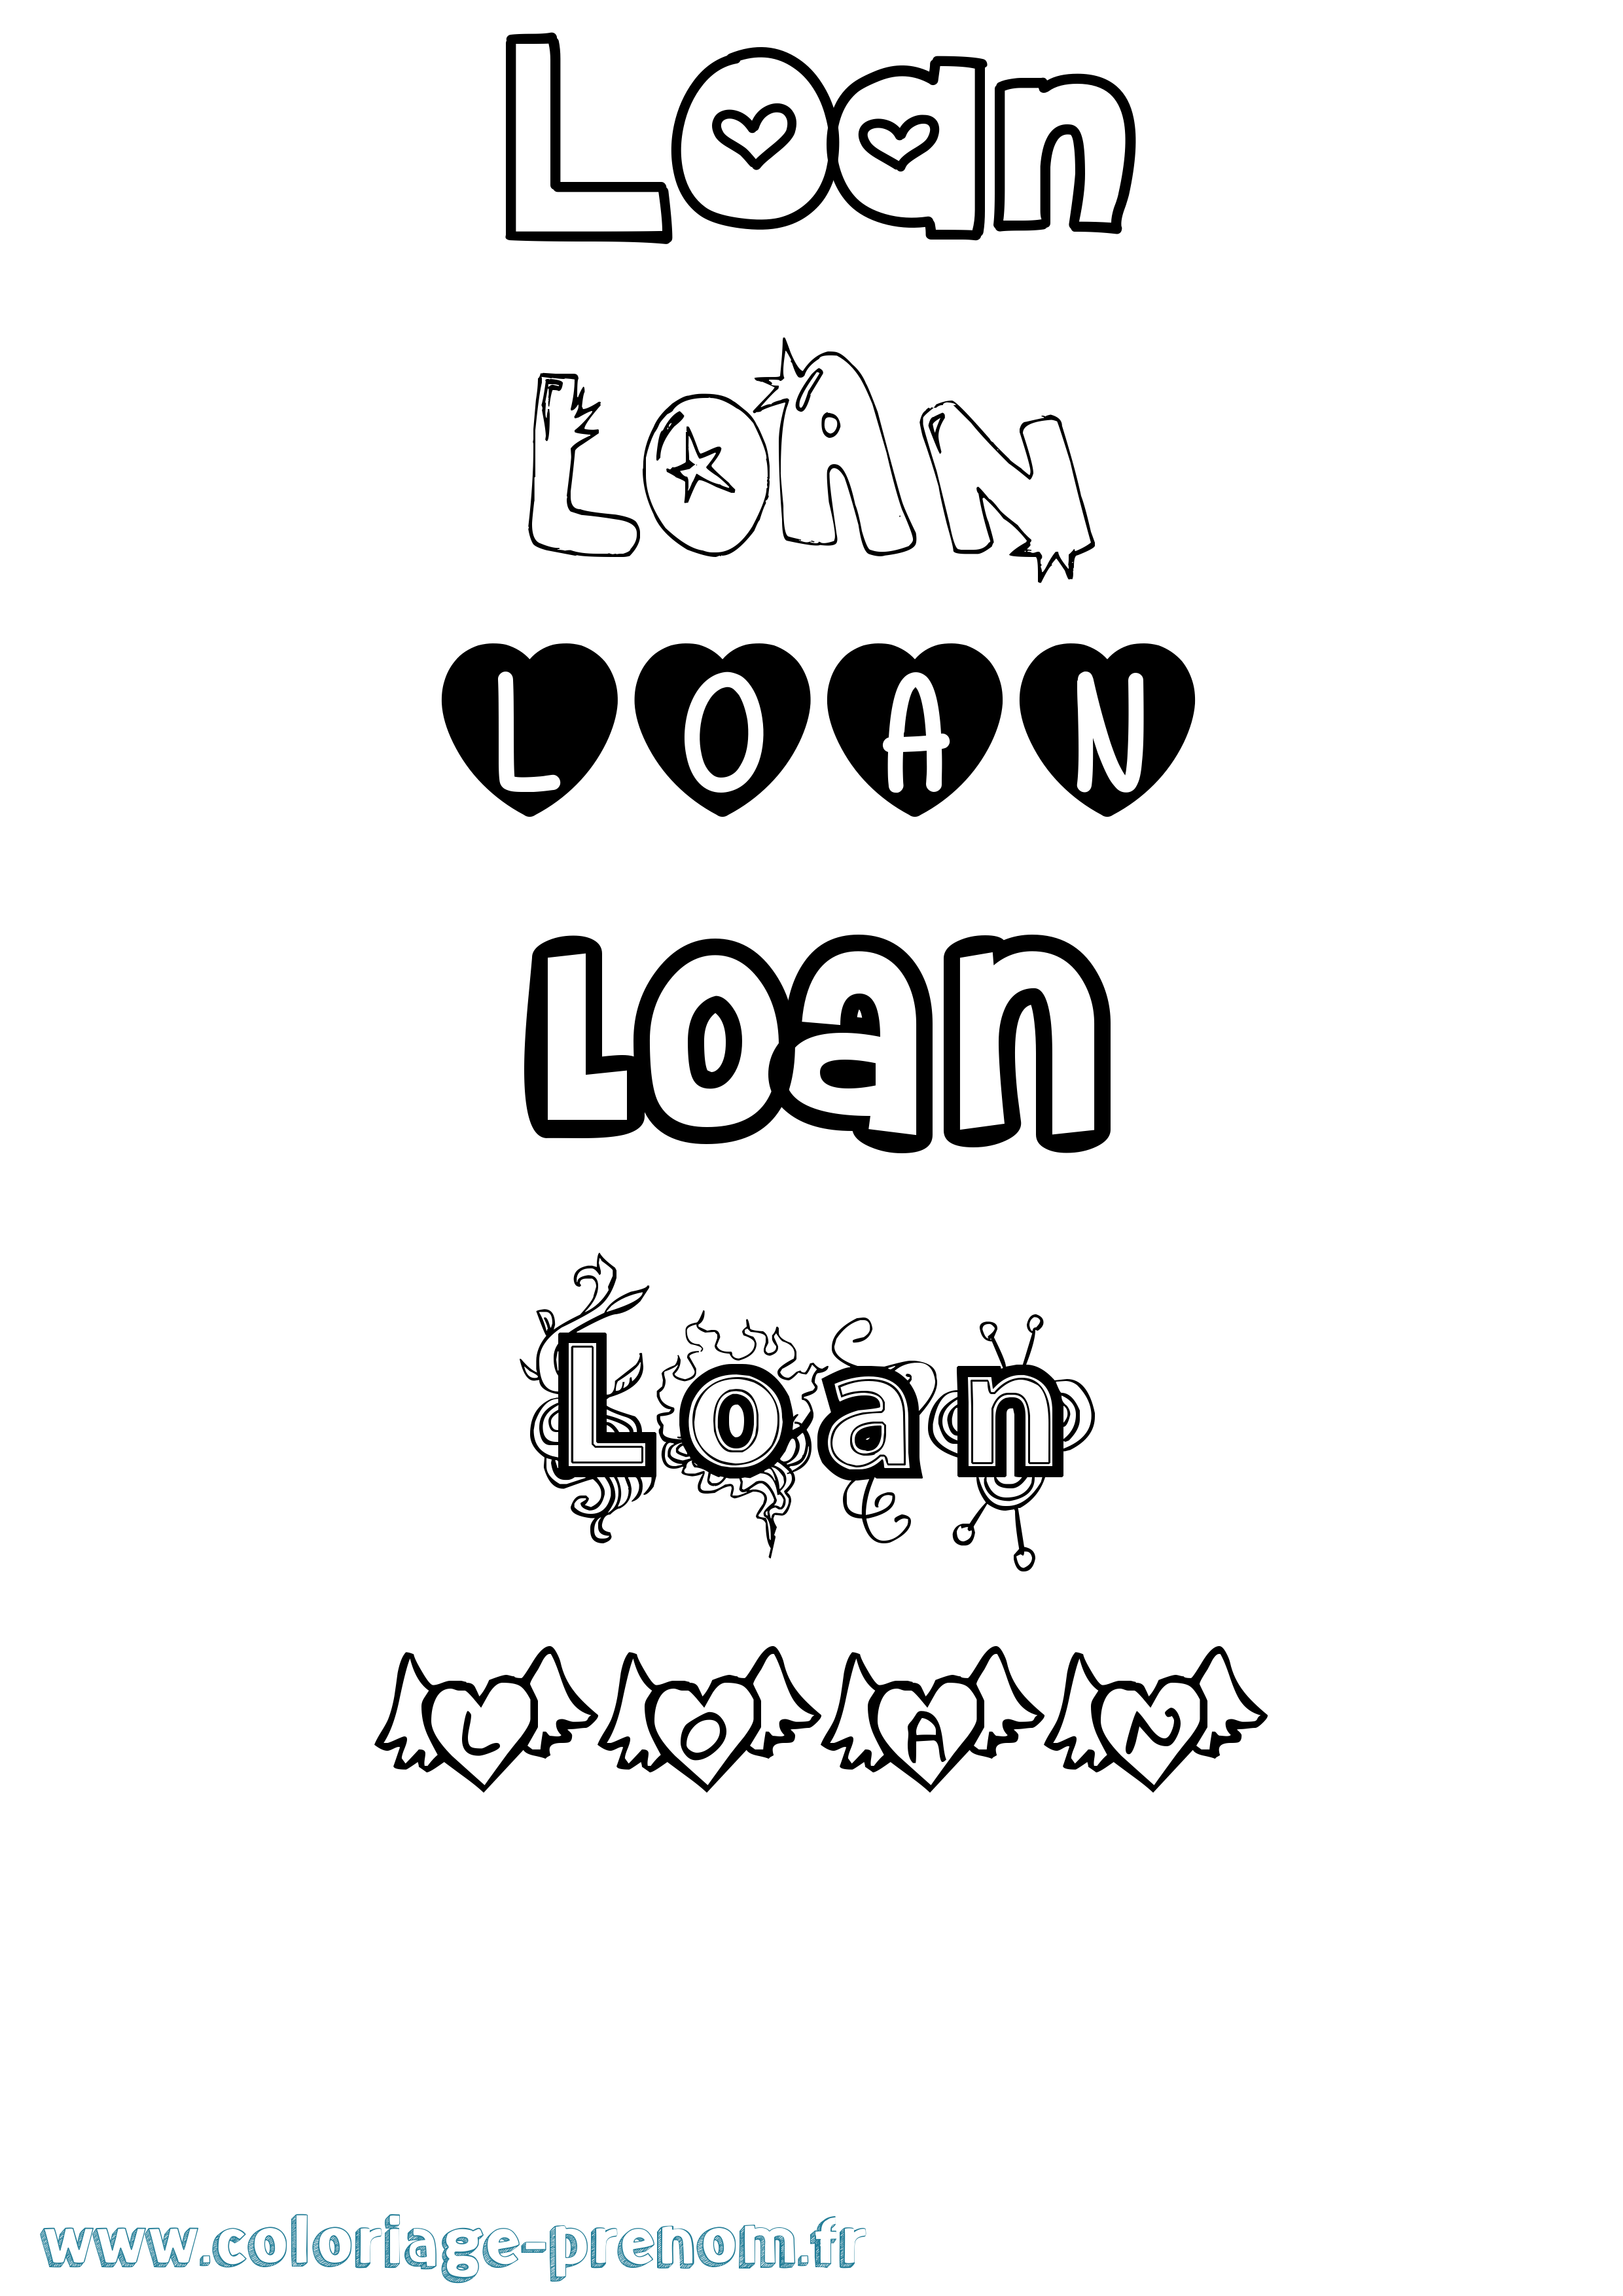 Coloriage prénom Loan